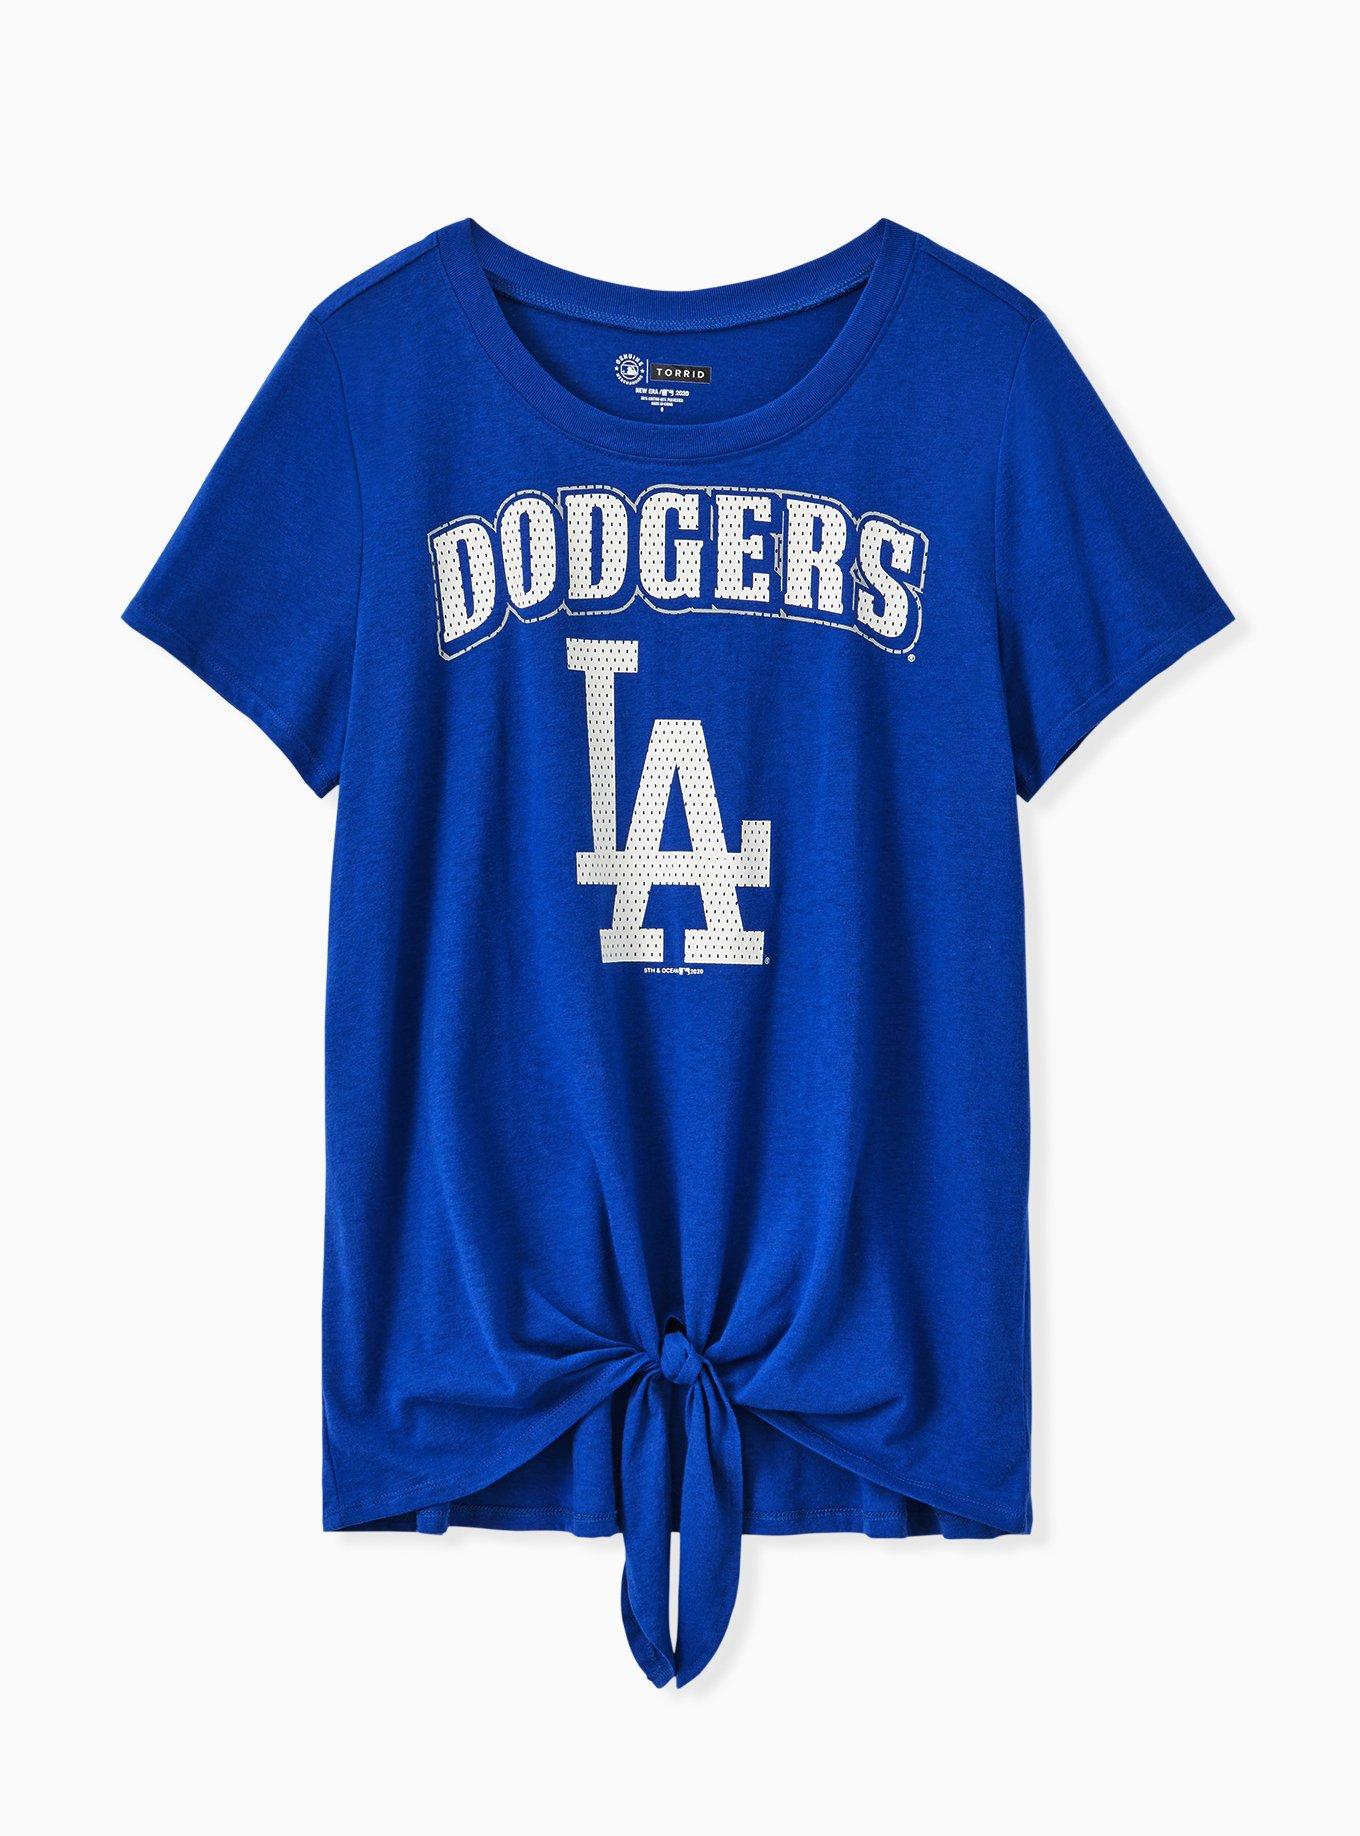 Los Angeles Dodgers Plus Sizes Clothing, Dodgers Plus Sizes